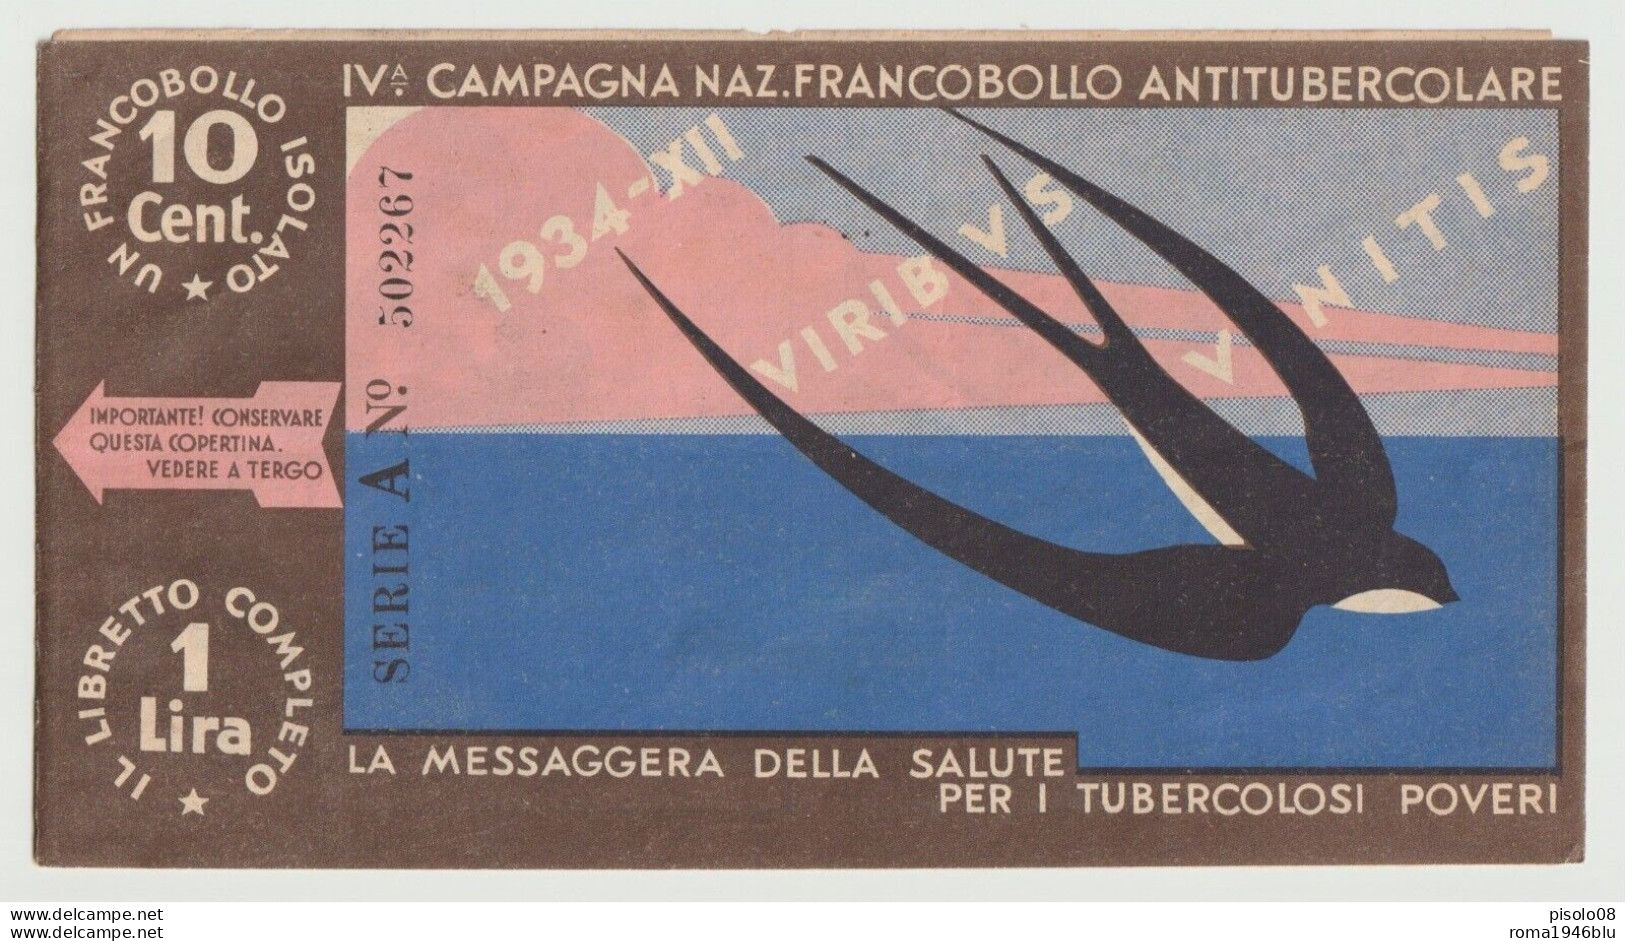 1934 VII CAMPAGNA NAZIONALE 10 FRANCOBOLLI ANTITUBERCOLARE LIBRETTO - Erinofilia